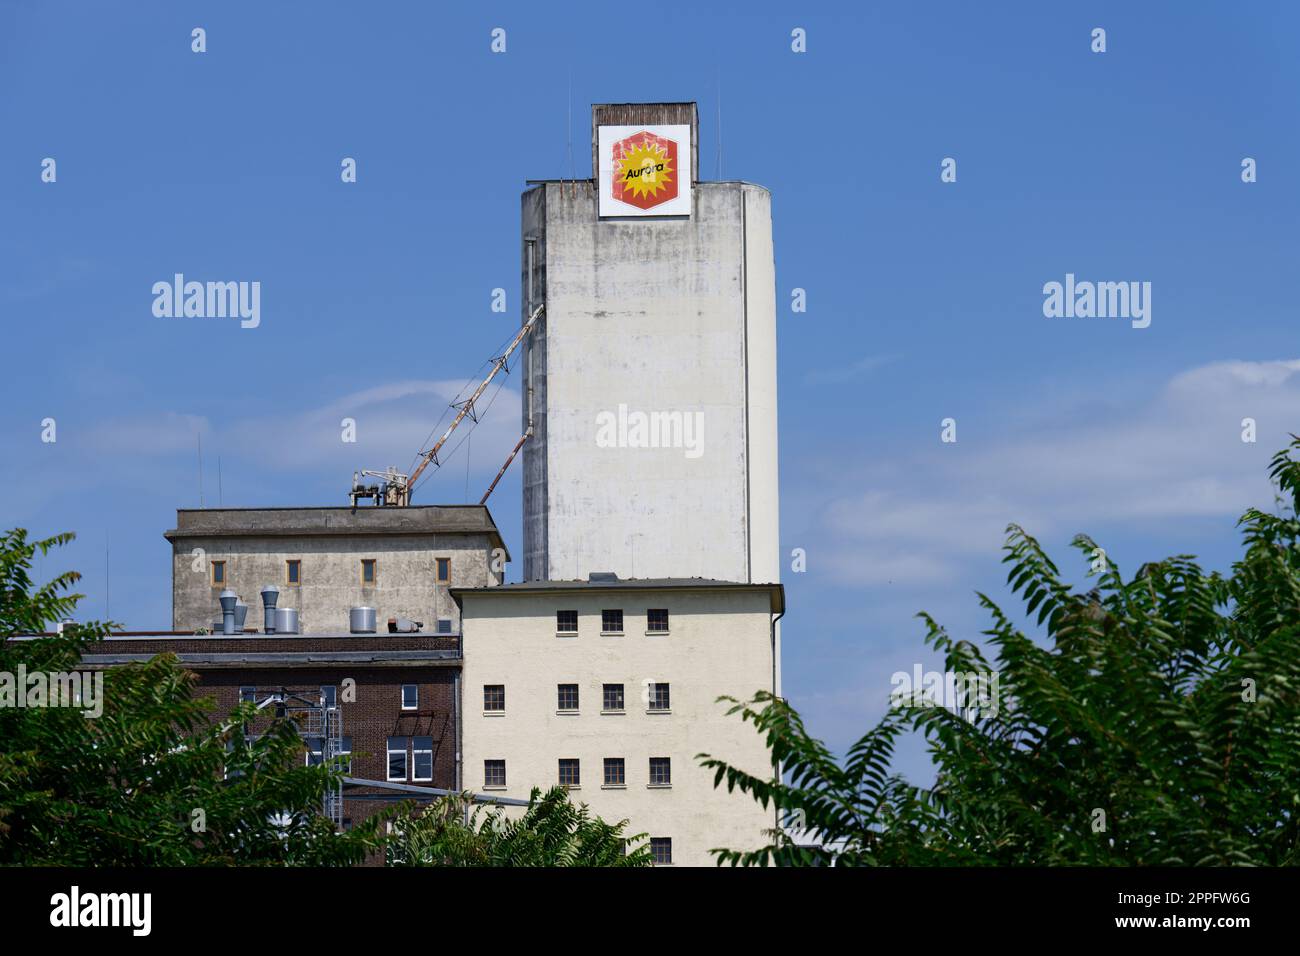 edificio storico del mulino aurora una volta uno dei più grandi mulini di farina d'europa Foto Stock